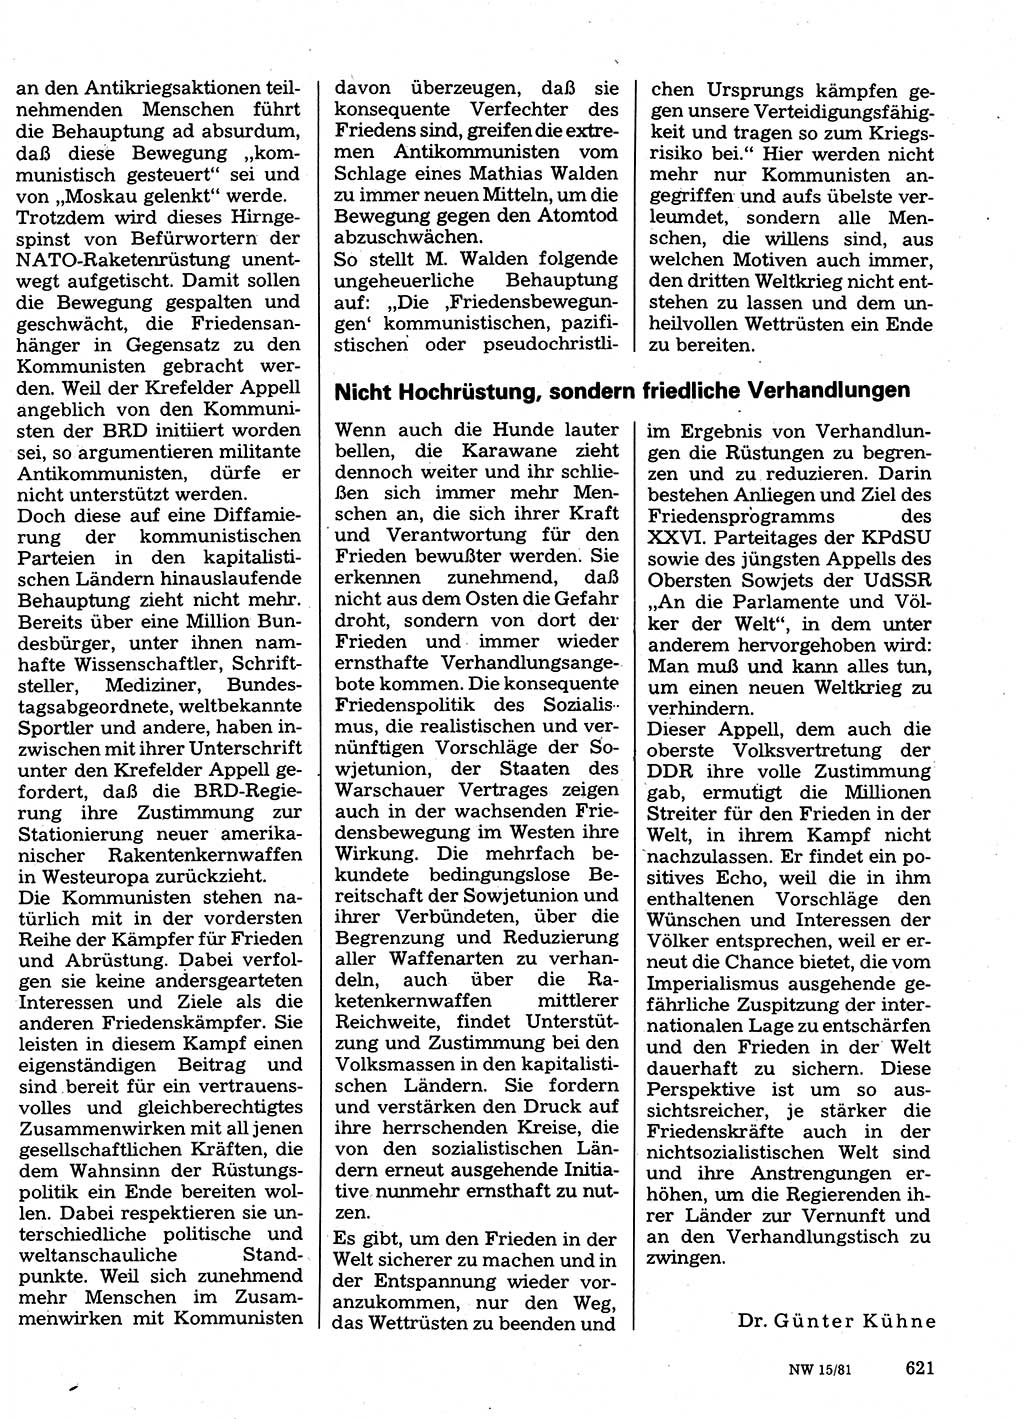 Neuer Weg (NW), Organ des Zentralkomitees (ZK) der SED (Sozialistische Einheitspartei Deutschlands) für Fragen des Parteilebens, 36. Jahrgang [Deutsche Demokratische Republik (DDR)] 1981, Seite 621 (NW ZK SED DDR 1981, S. 621)